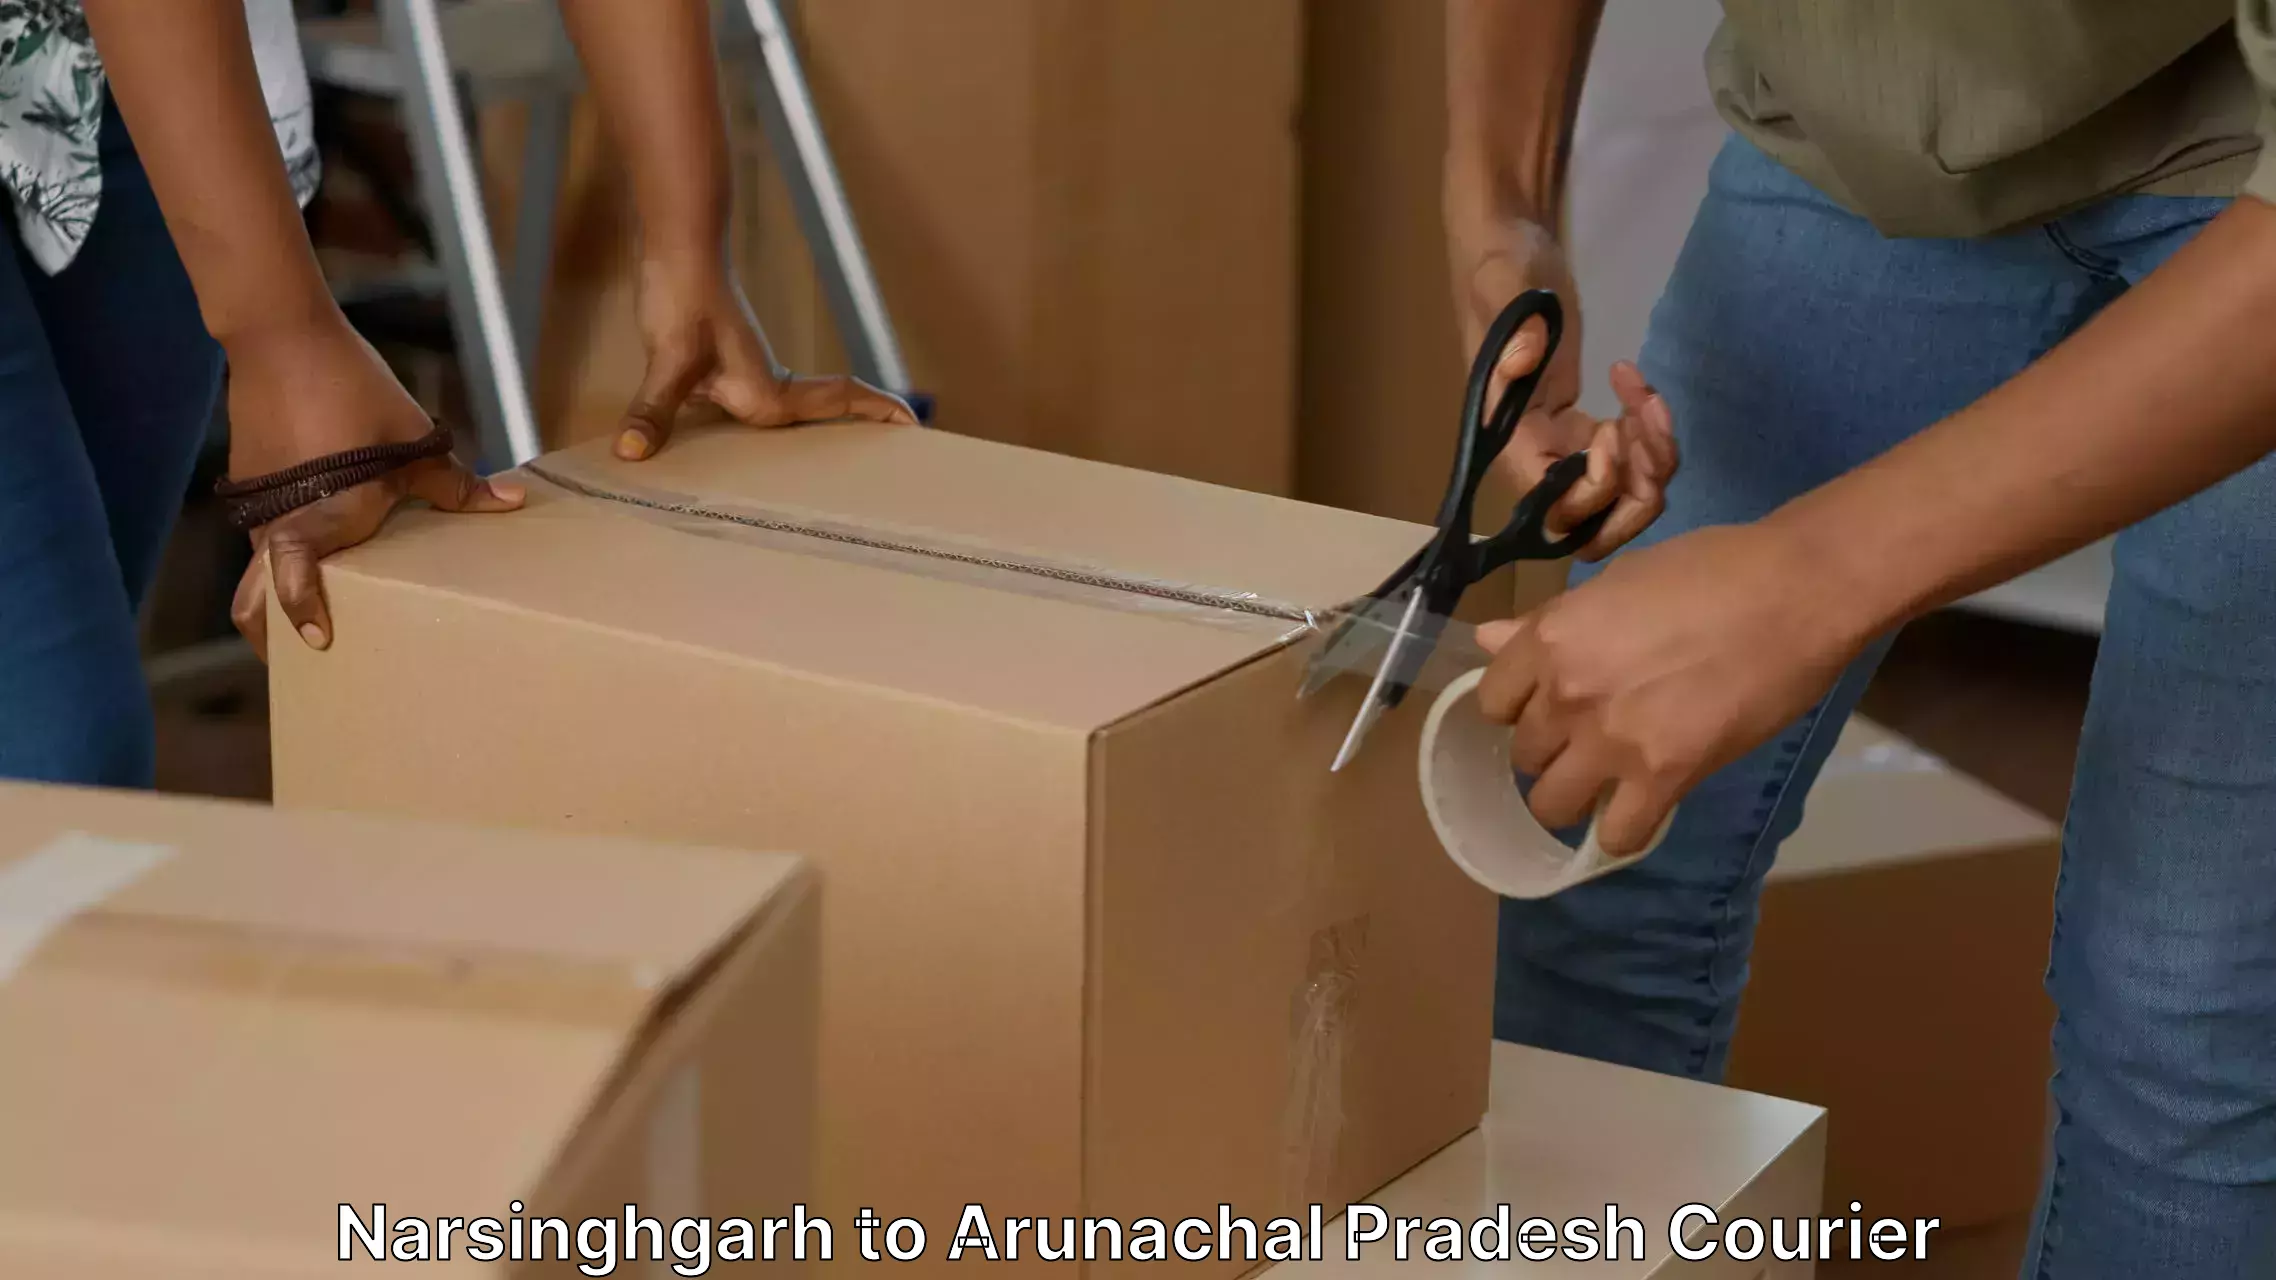 Efficient relocation services Narsinghgarh to Arunachal Pradesh